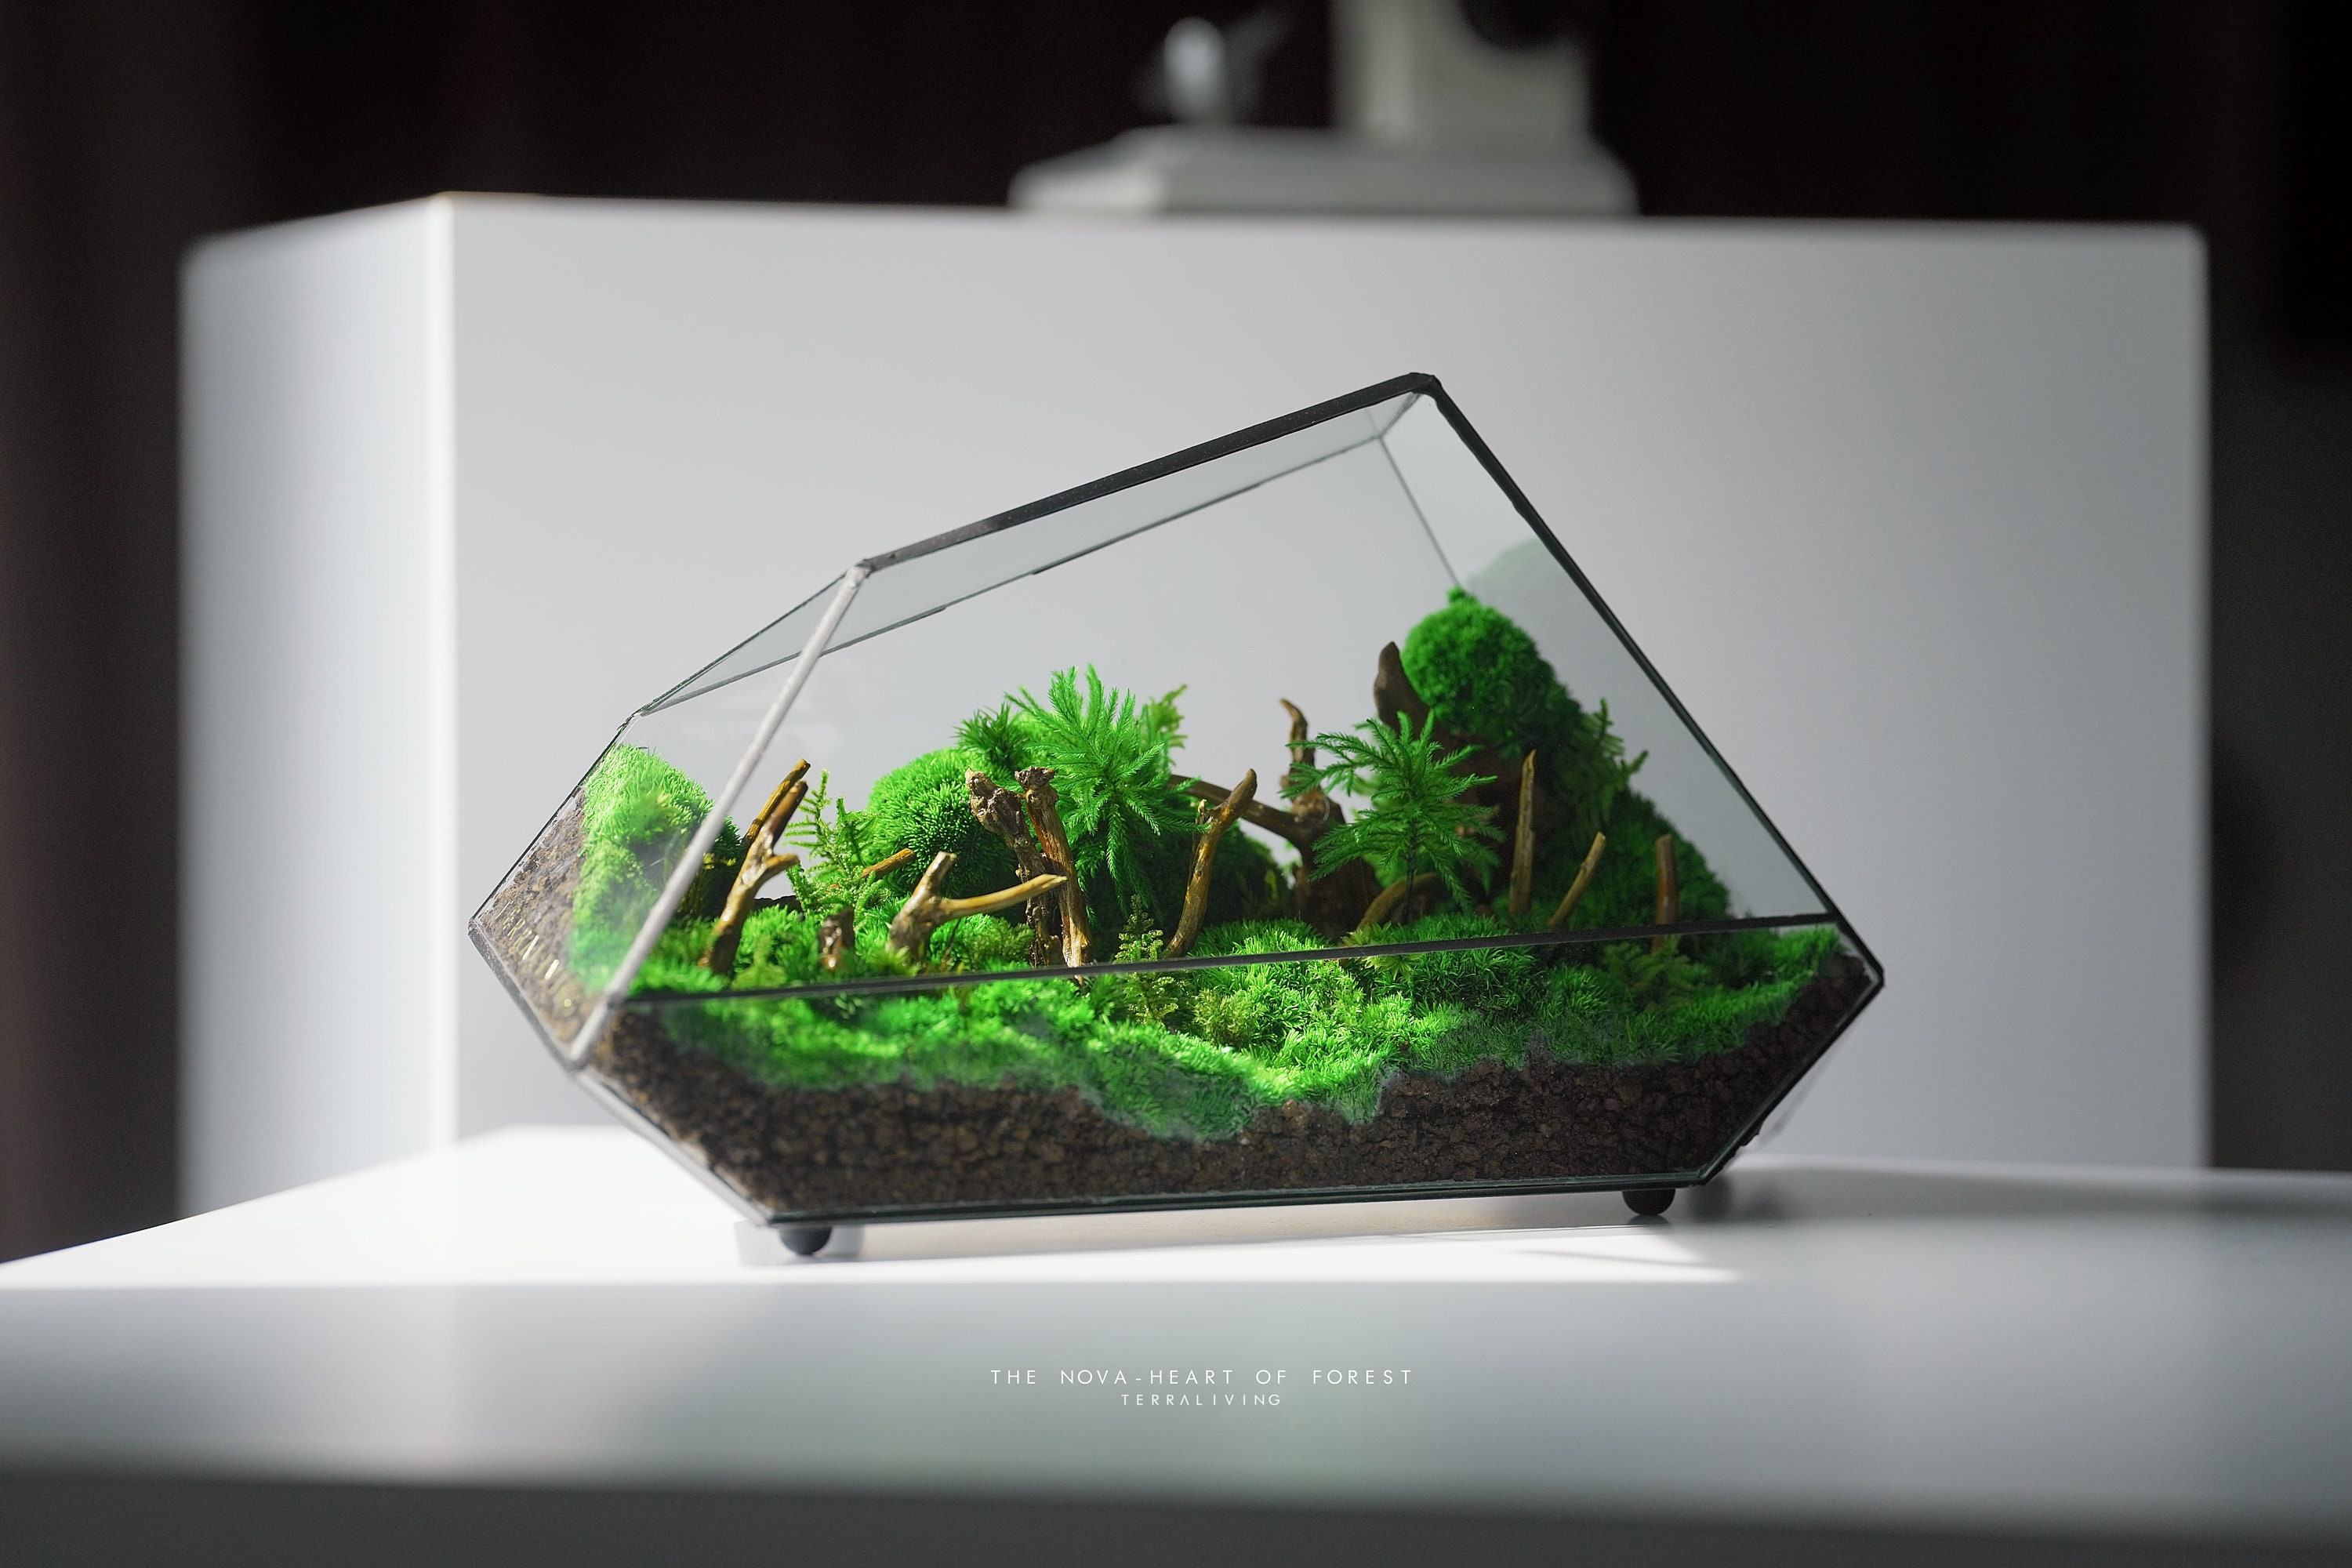 Terrarium Decor Rainforest Diorama Supplies Preserved Moss Half-handmade -  AliExpress